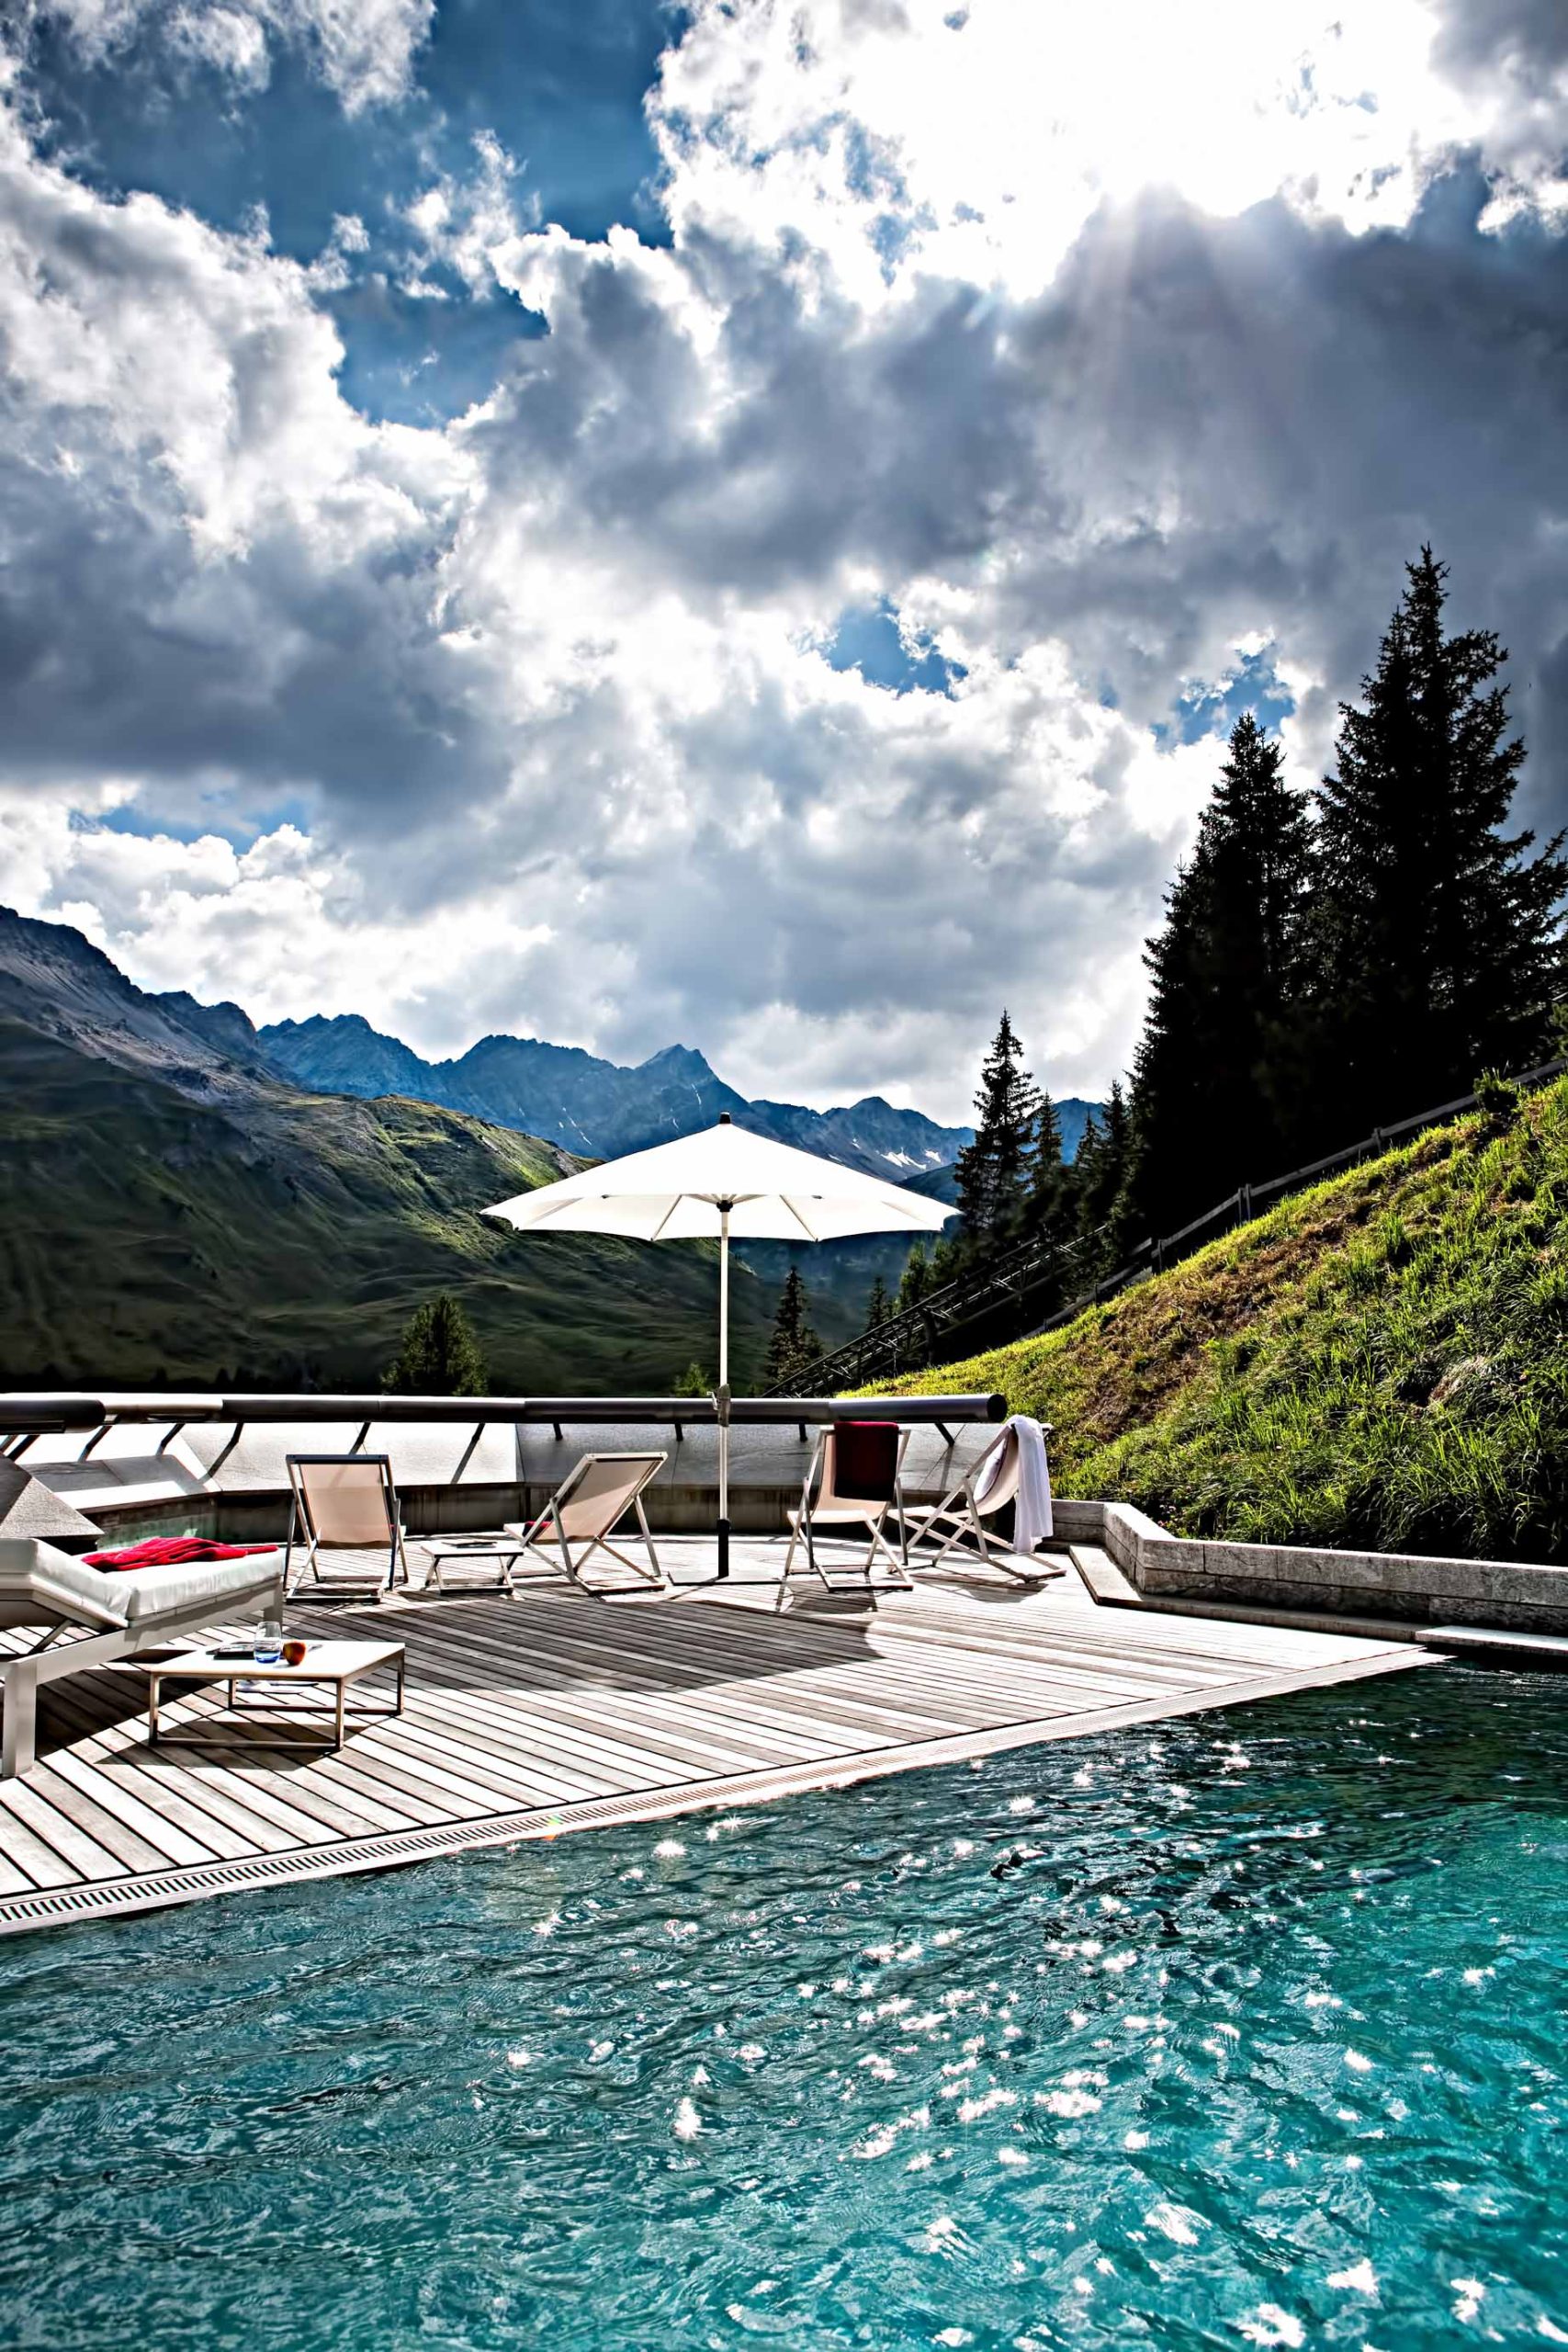 Tschuggen Grand Hotel – Arosa, Switzerland – Outdoor Pool Deck View